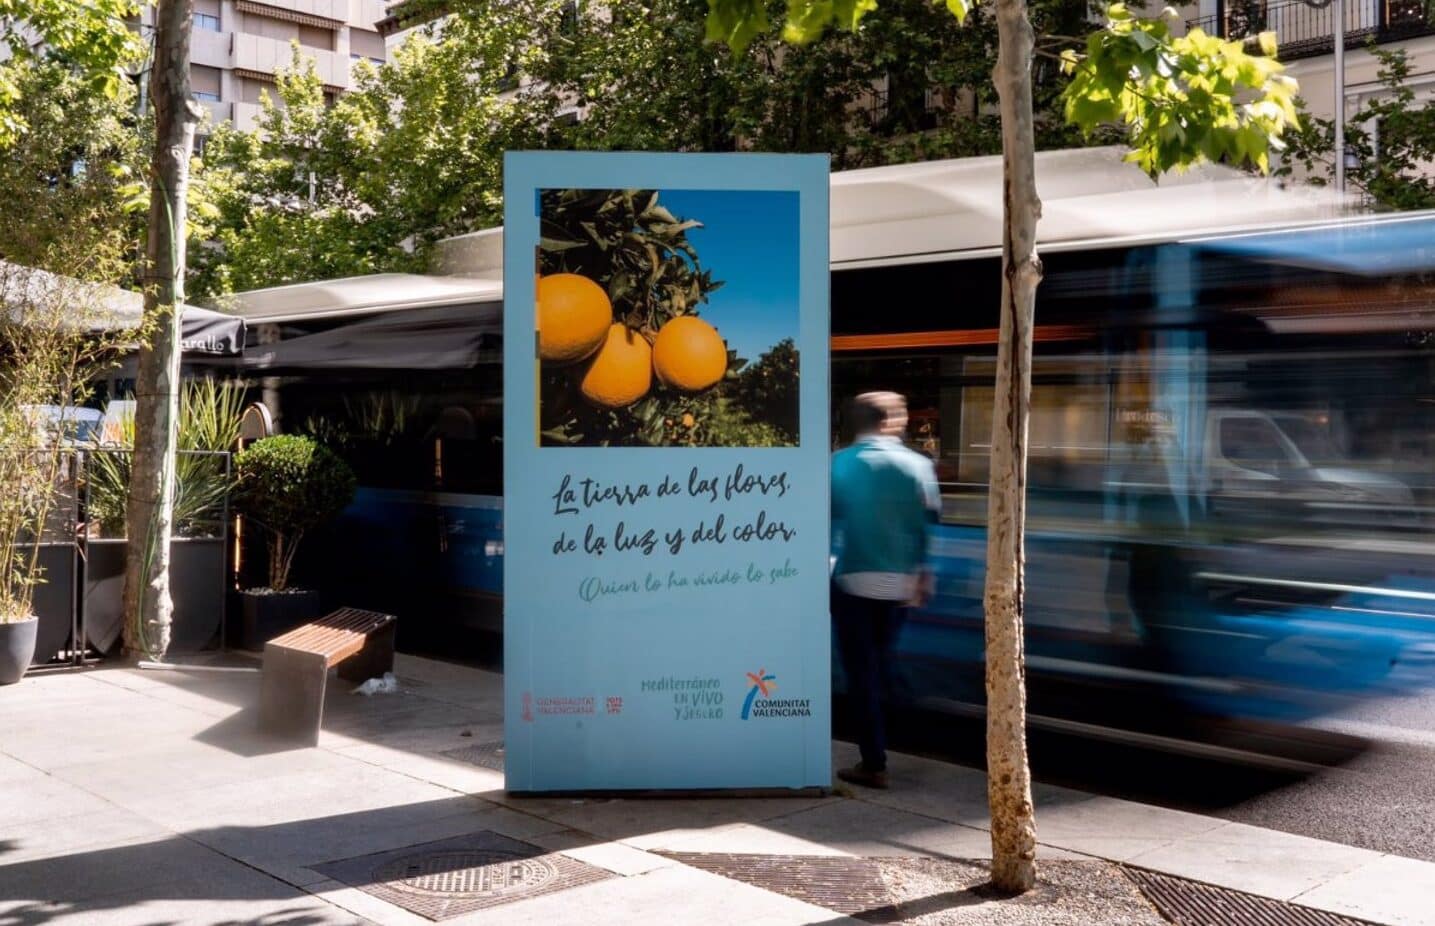 Turisme atrae al mercado madrileño con una campaña “sensorial” que acerca los olores de la Comunitat Valenciana